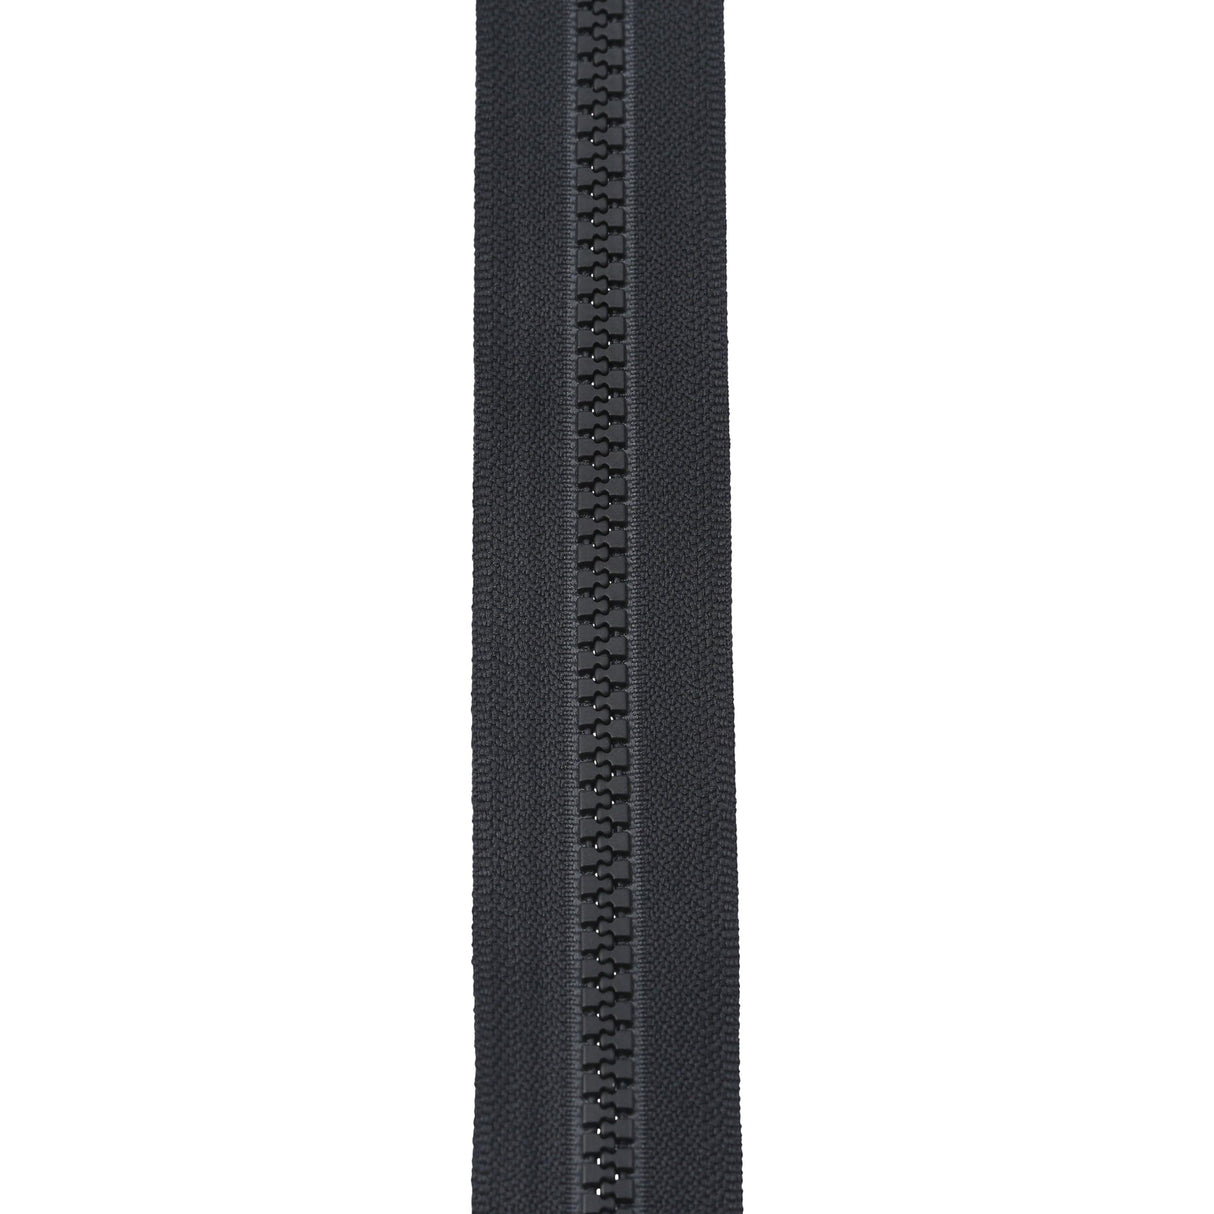 Ohio Travel Bag Zippers #5 Vislon 2-Way Zipper 30in Black, #5VTW-30-BLK 5VTW-30-BLK